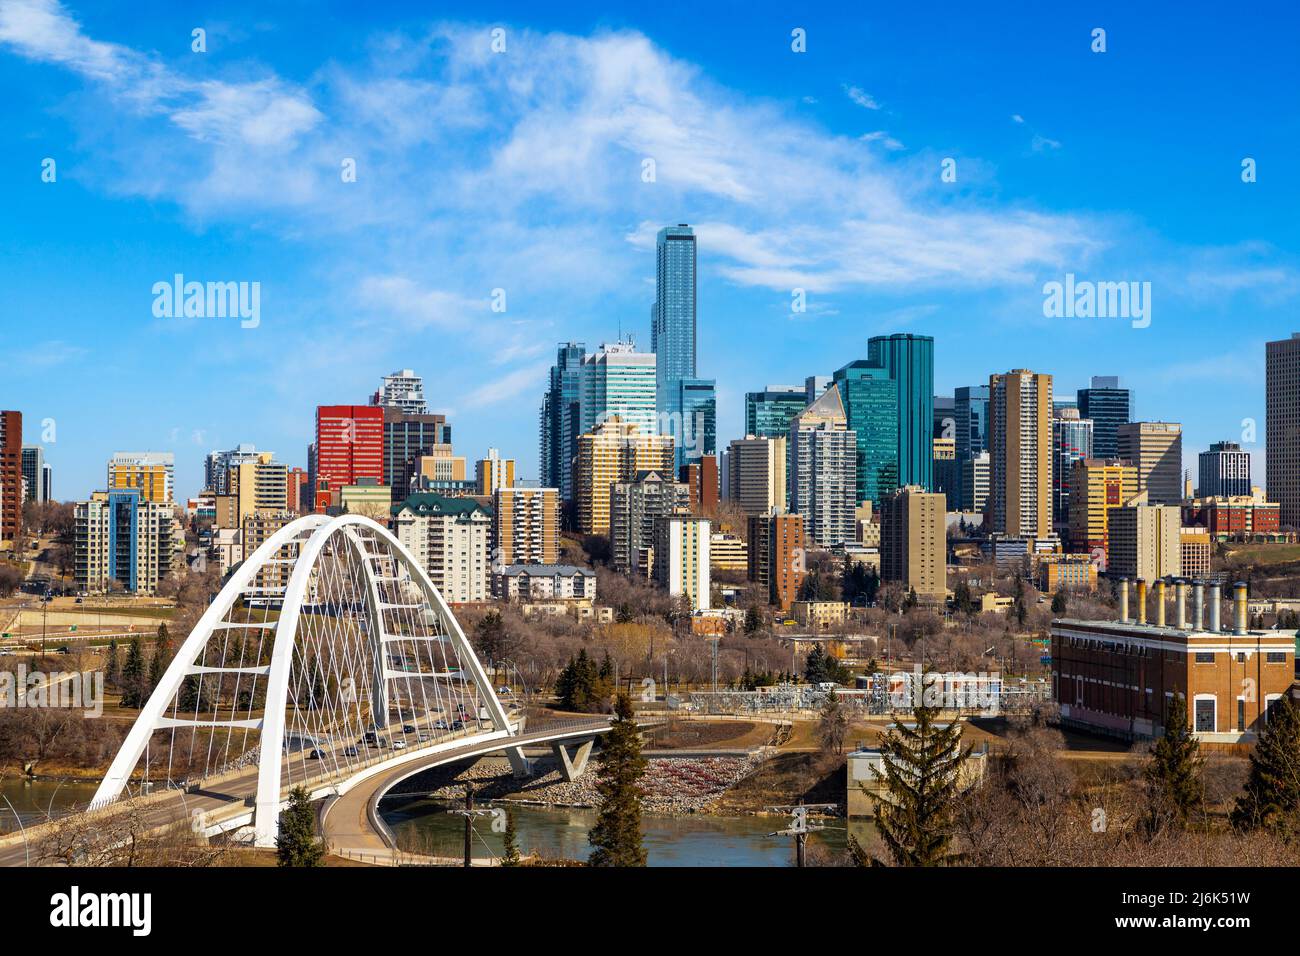 Skyline von Edmonton mit Walterdale Bridge über den Saskatchewan River und den umliegenden Wolkenkratzern. Edmonton ist die Hauptstadt von Alberta, Kanada. Stockfoto